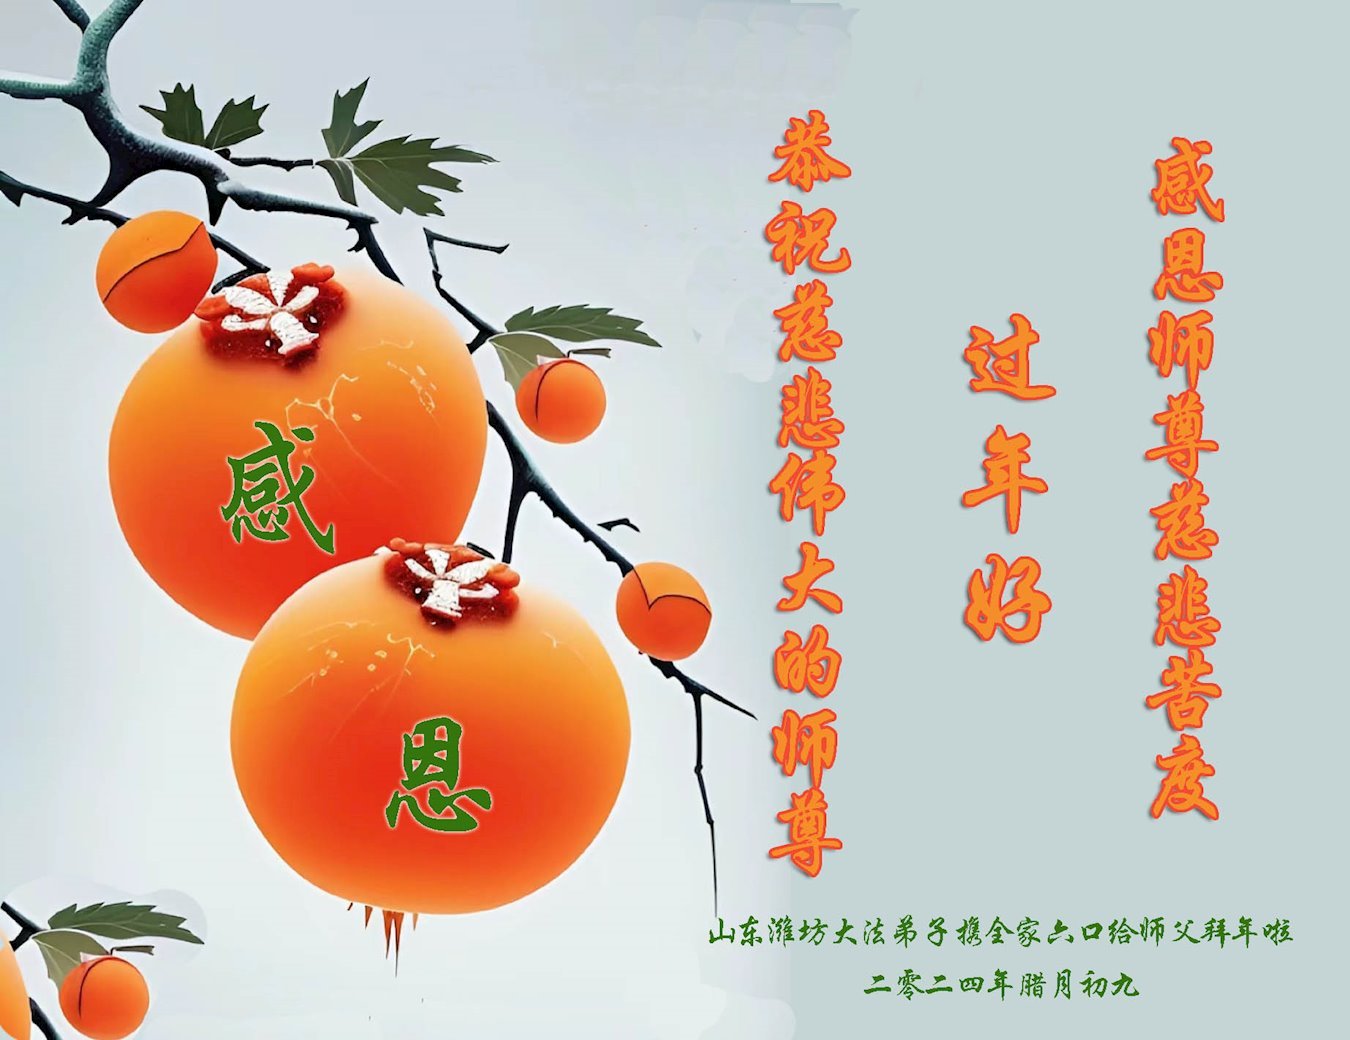 Image for article Os praticantes do Falun Dafa da cidade de Weifang desejam respeitosamente ao Mestre Li Hongzhi um Feliz Ano Novo Chinês (18 saudações)